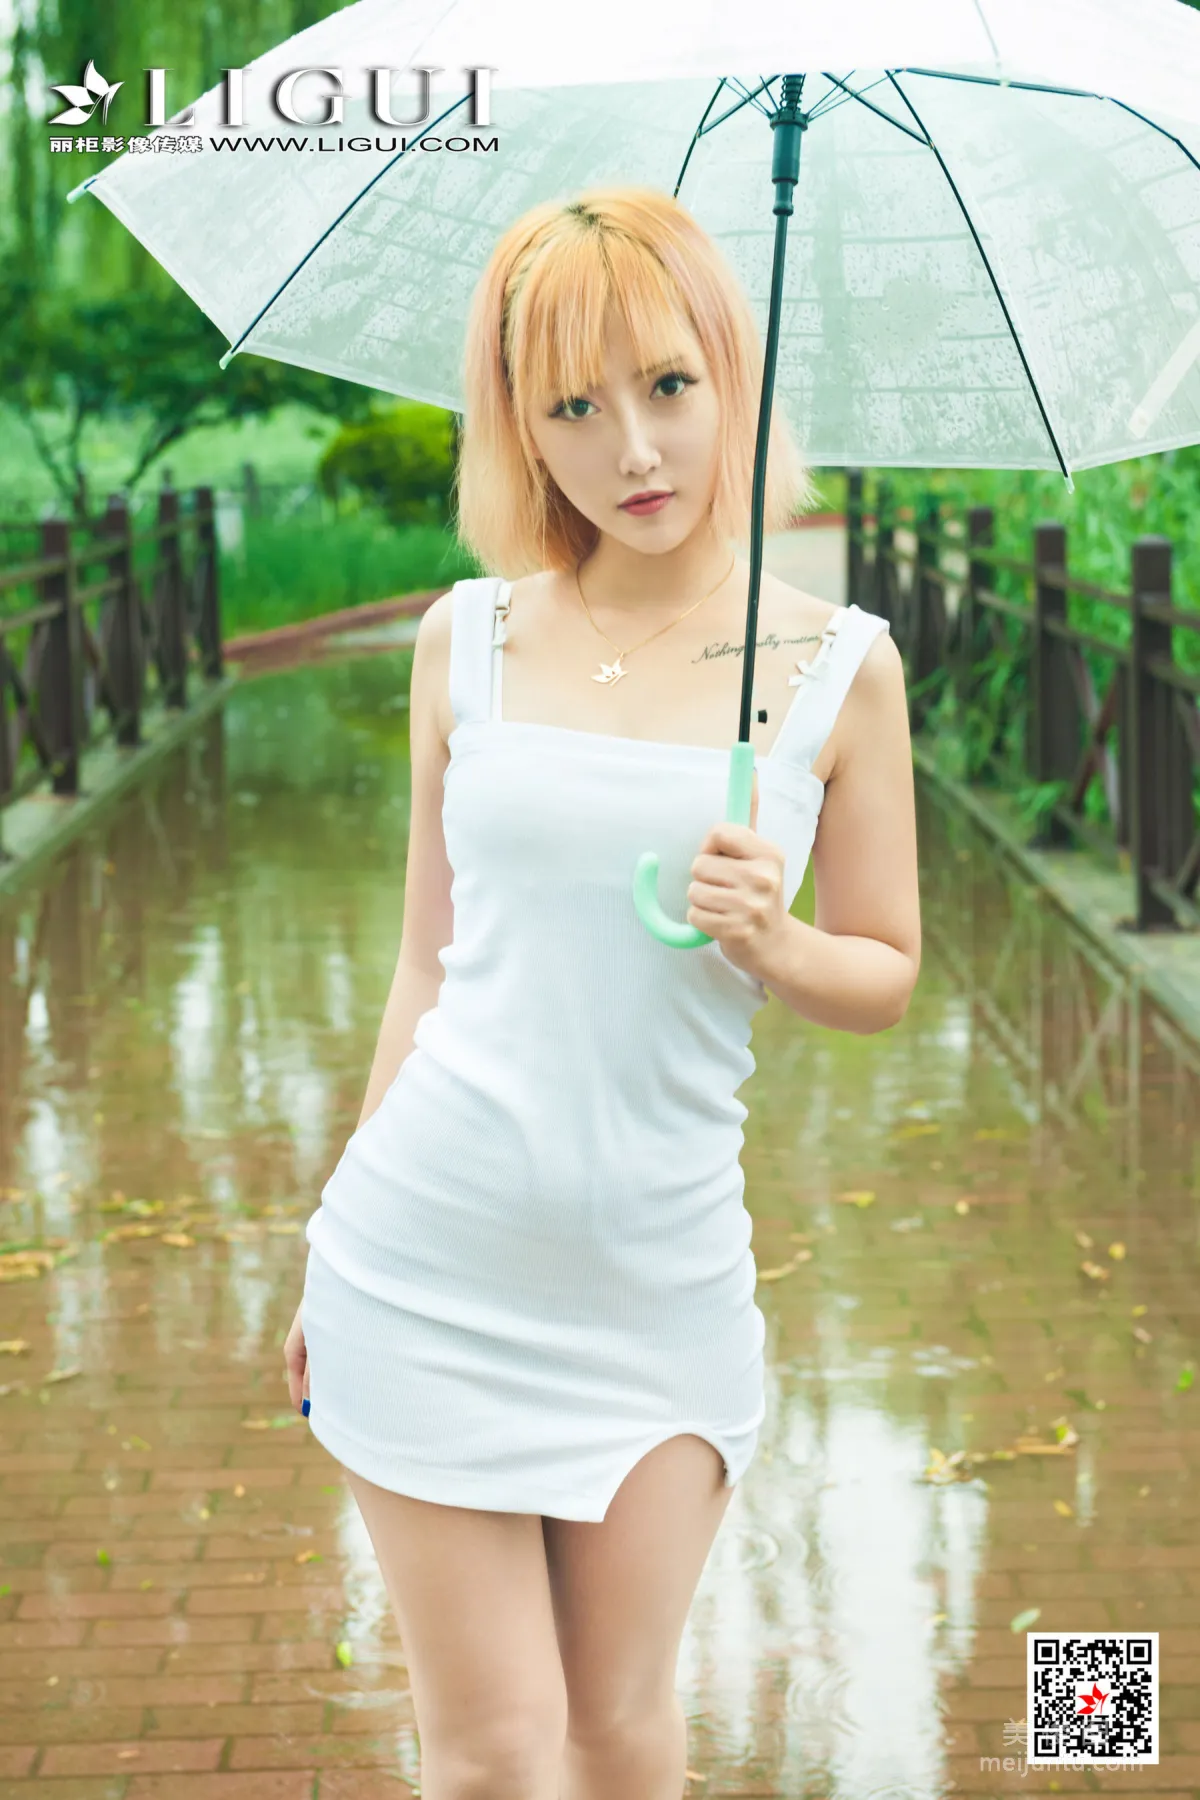 [丽柜Ligui] 网络丽人 Model 小爽 《雨中漫步》10